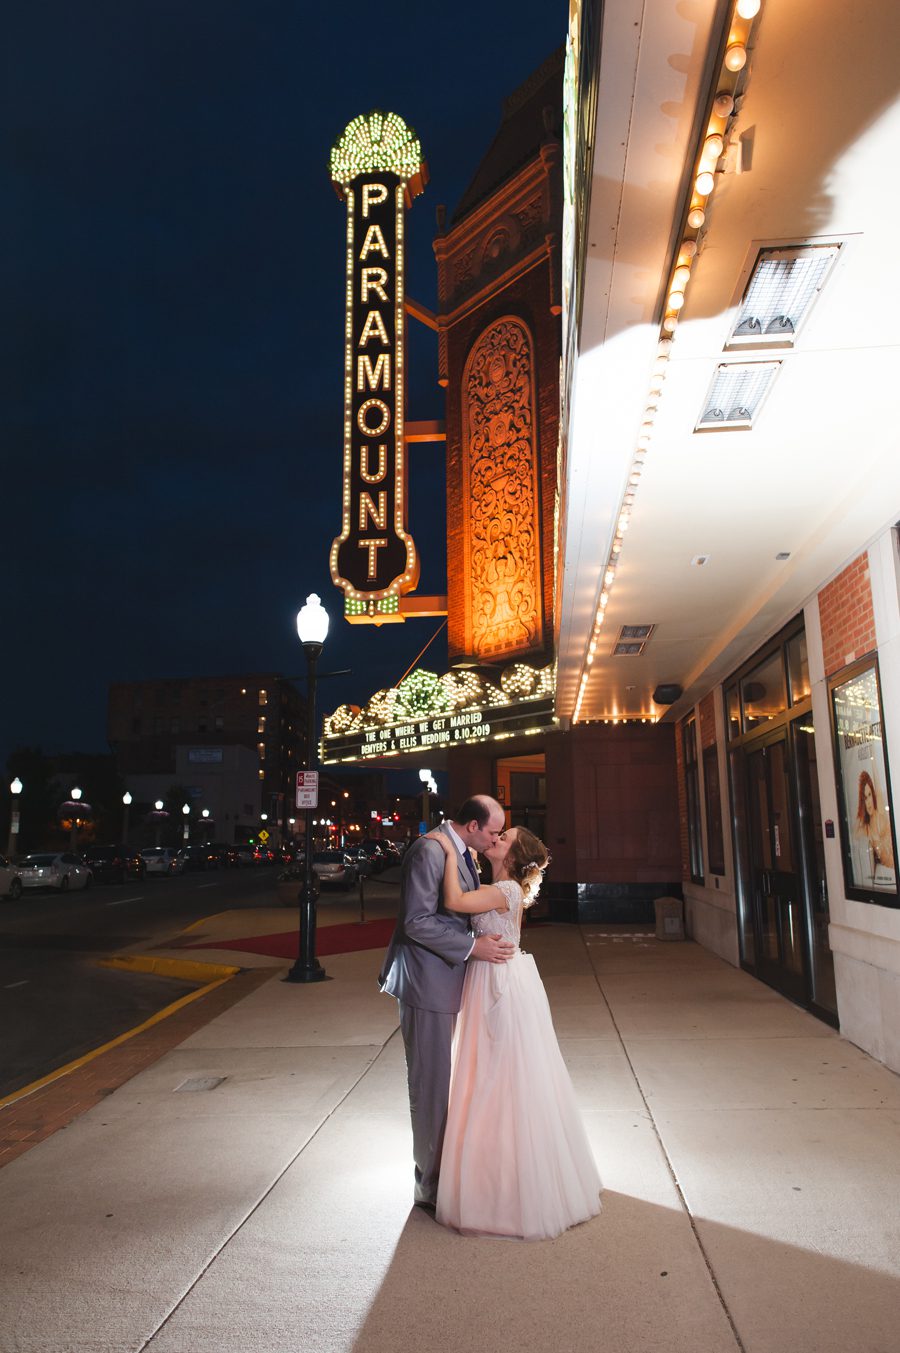 Meyer Ballroom in Aurora, Illinois – Wedding photography